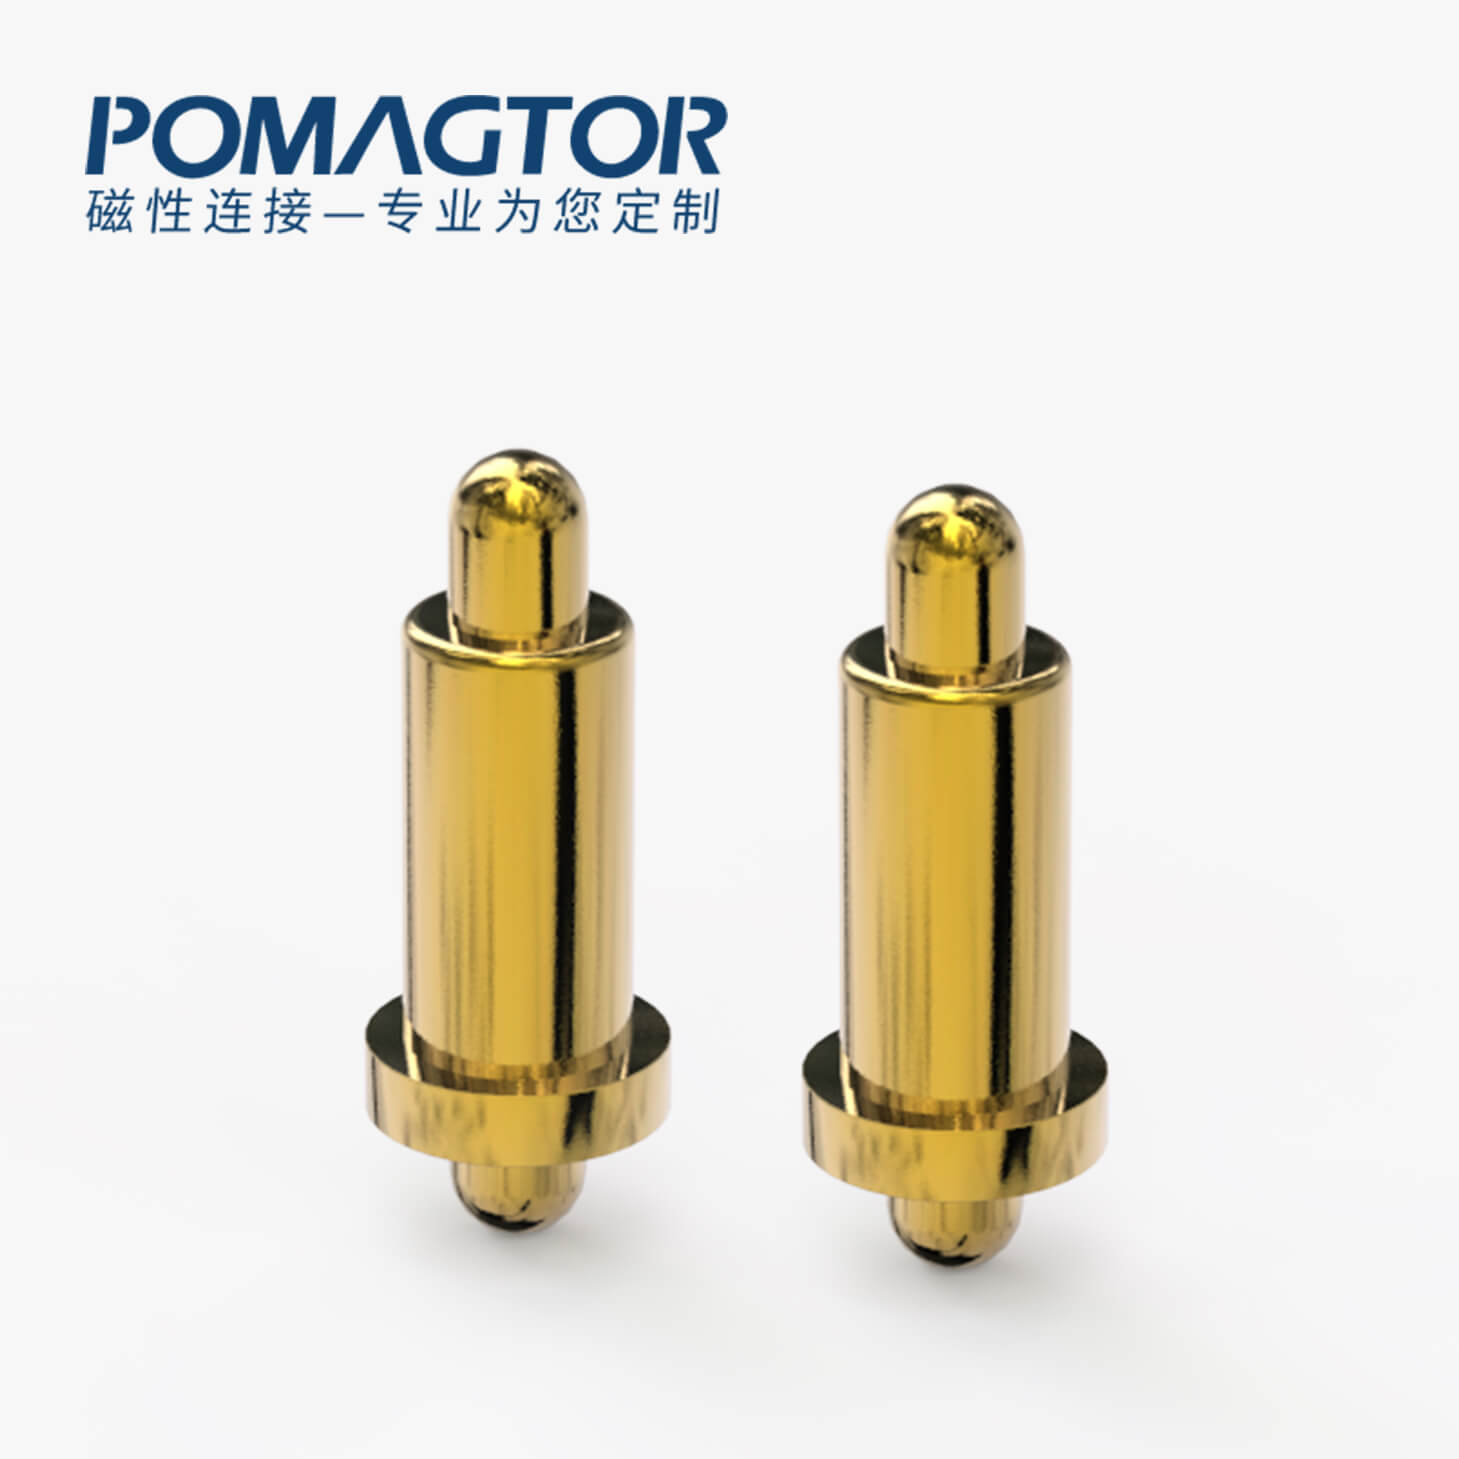 POGO PIN 双头式：电镀黄铜Au1u，电压12V，电流1A，弹力10000次+，工作温度-30°~85°